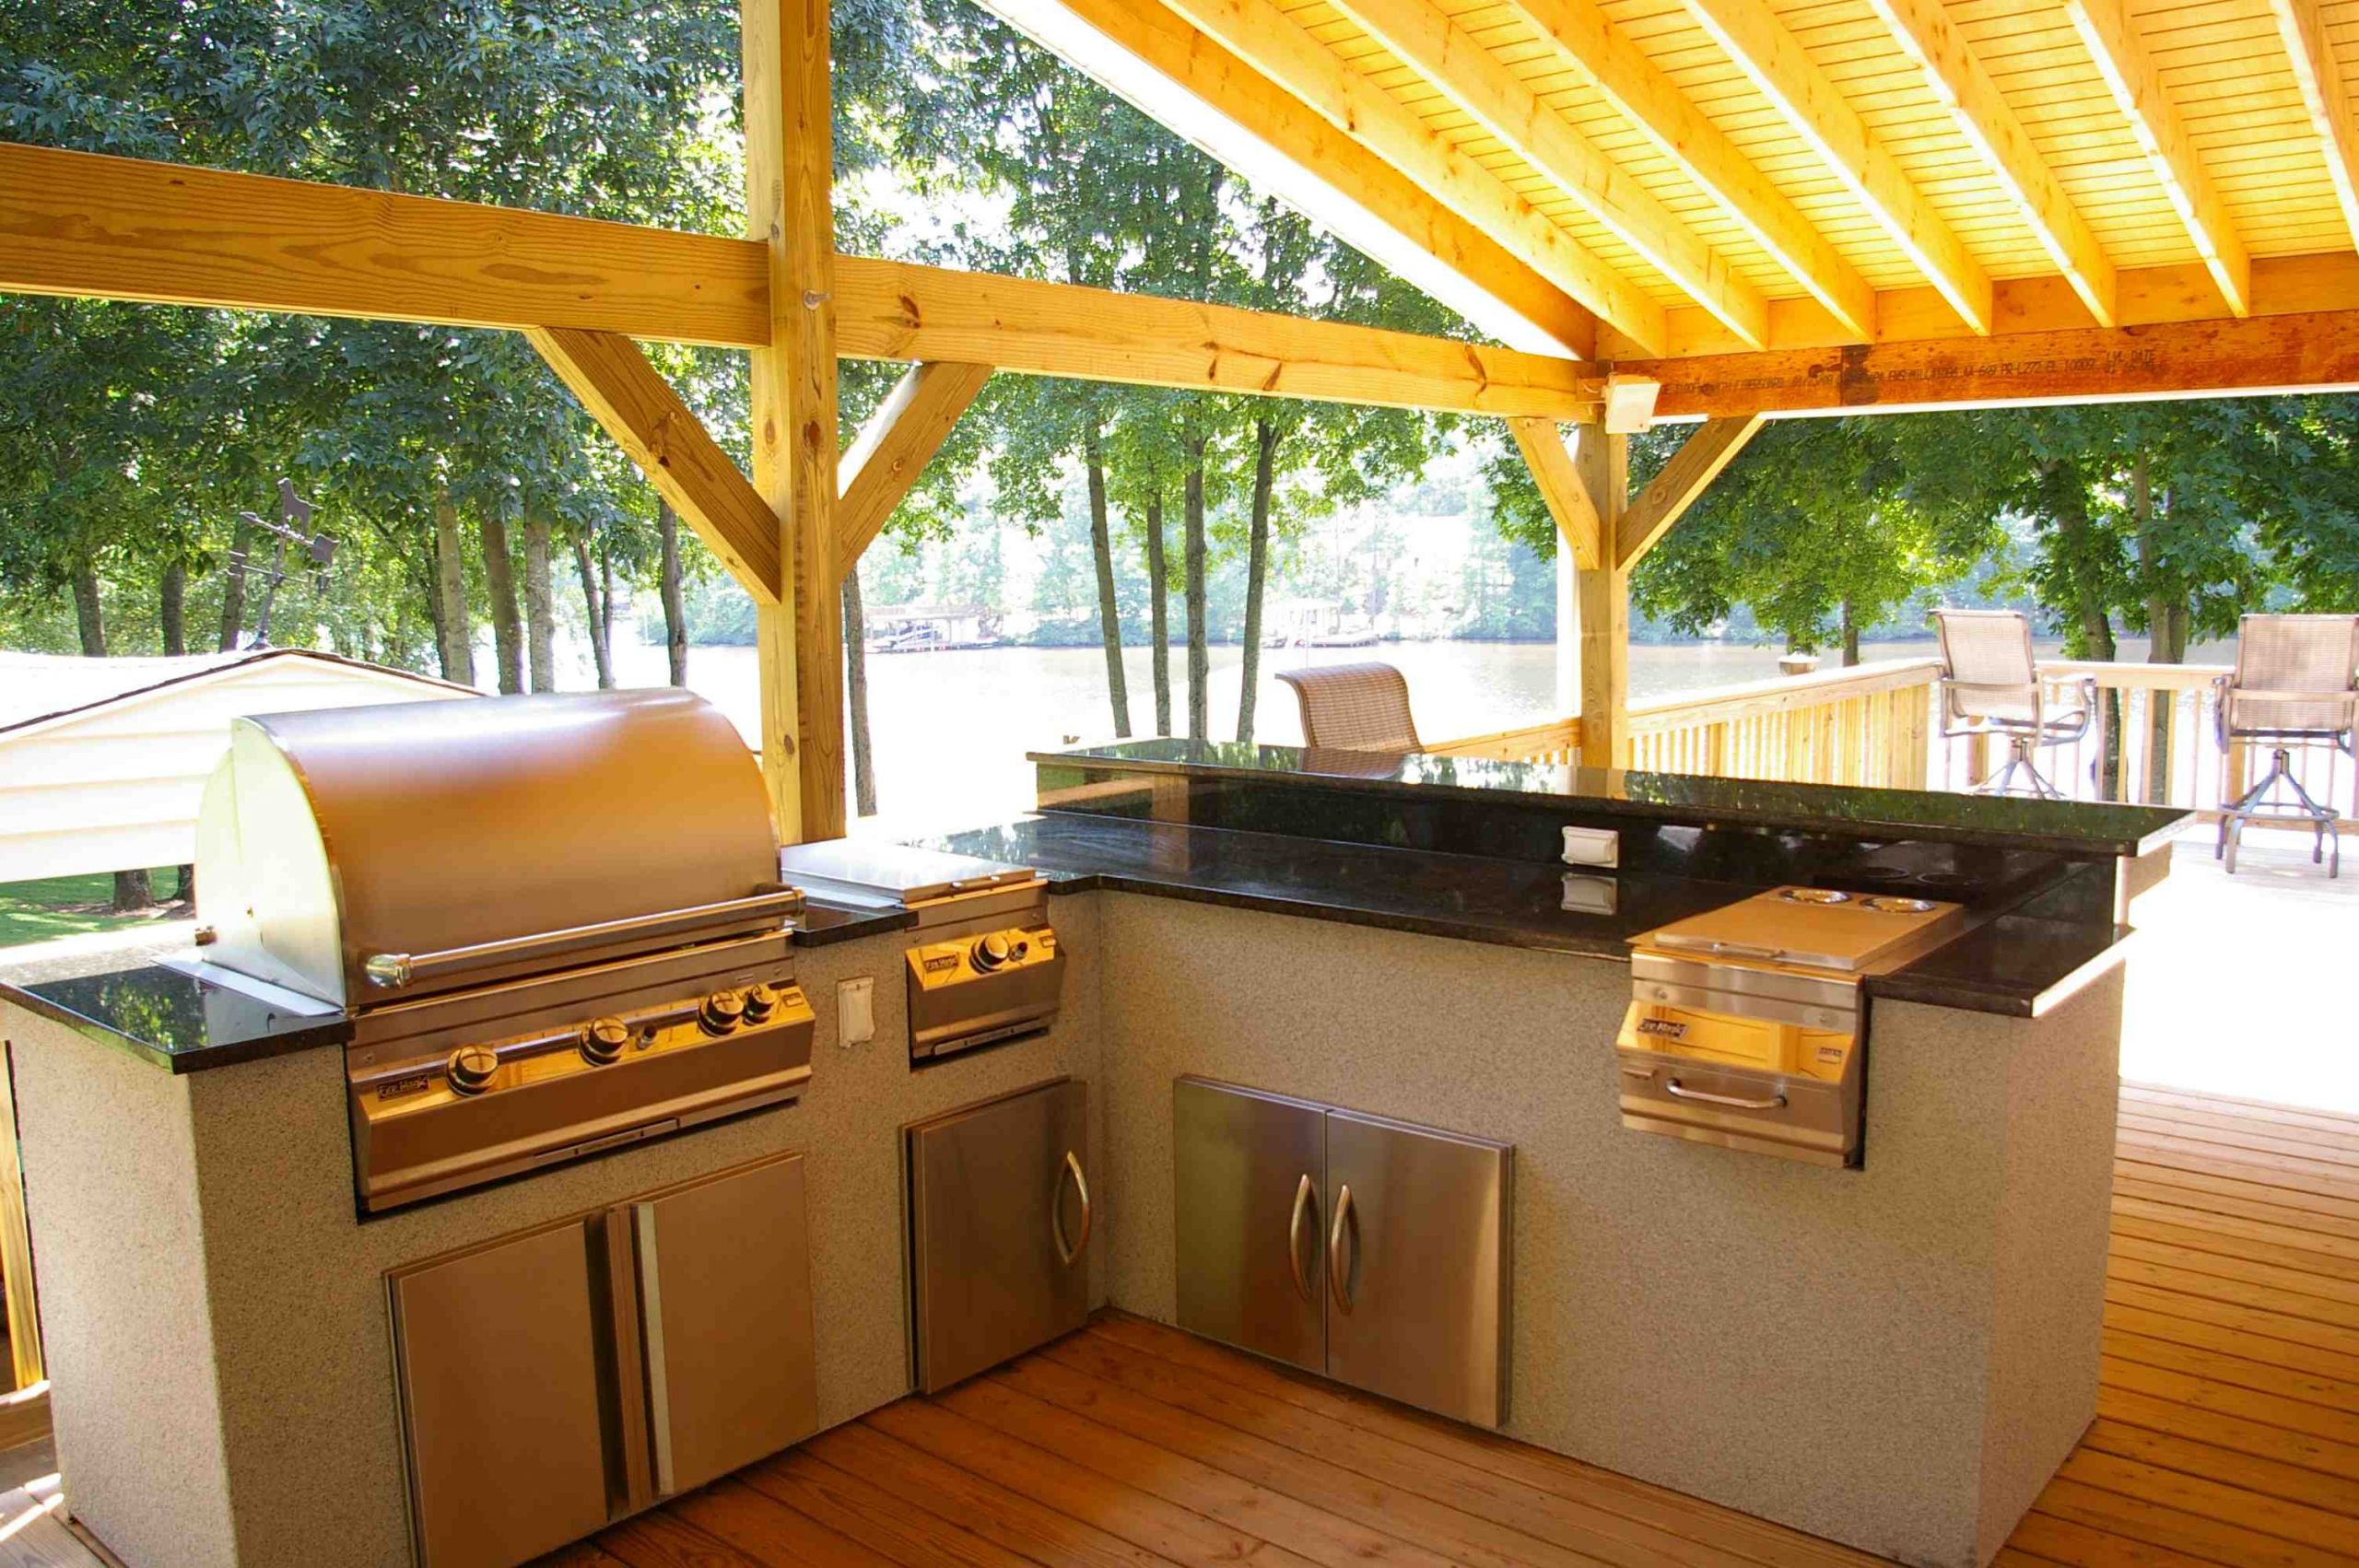 Outdoor Kitchen Plans
 Outdoor Kitchen Design How to Design Outdoor Kitchen